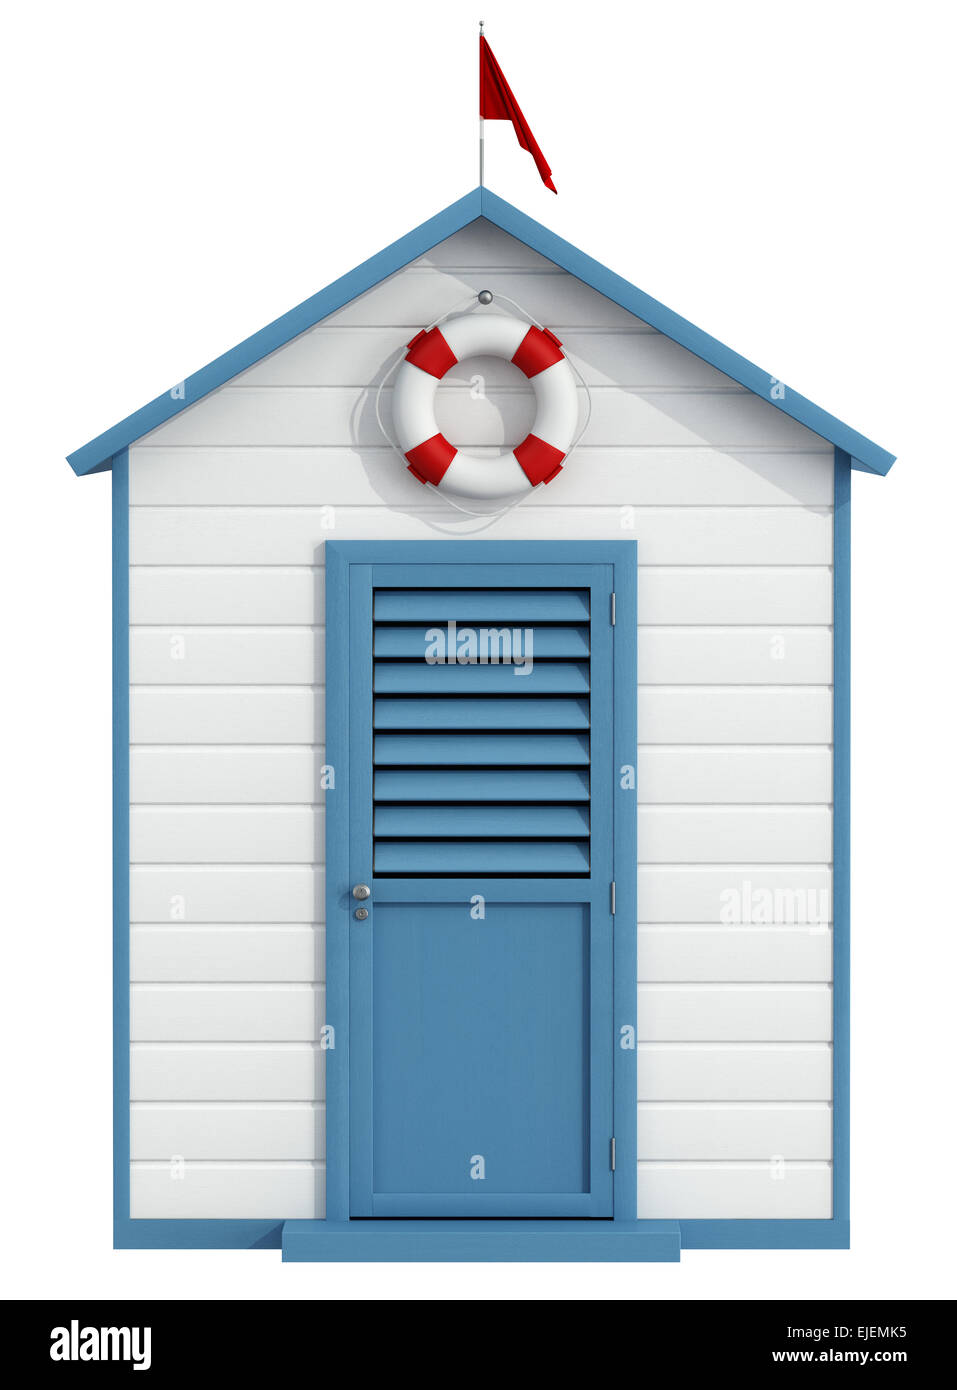 Weiße und blaue Strandkabine mit geschlossener Tür, Boje und kleine rote-Fahne - 3D Rendering Stockfoto